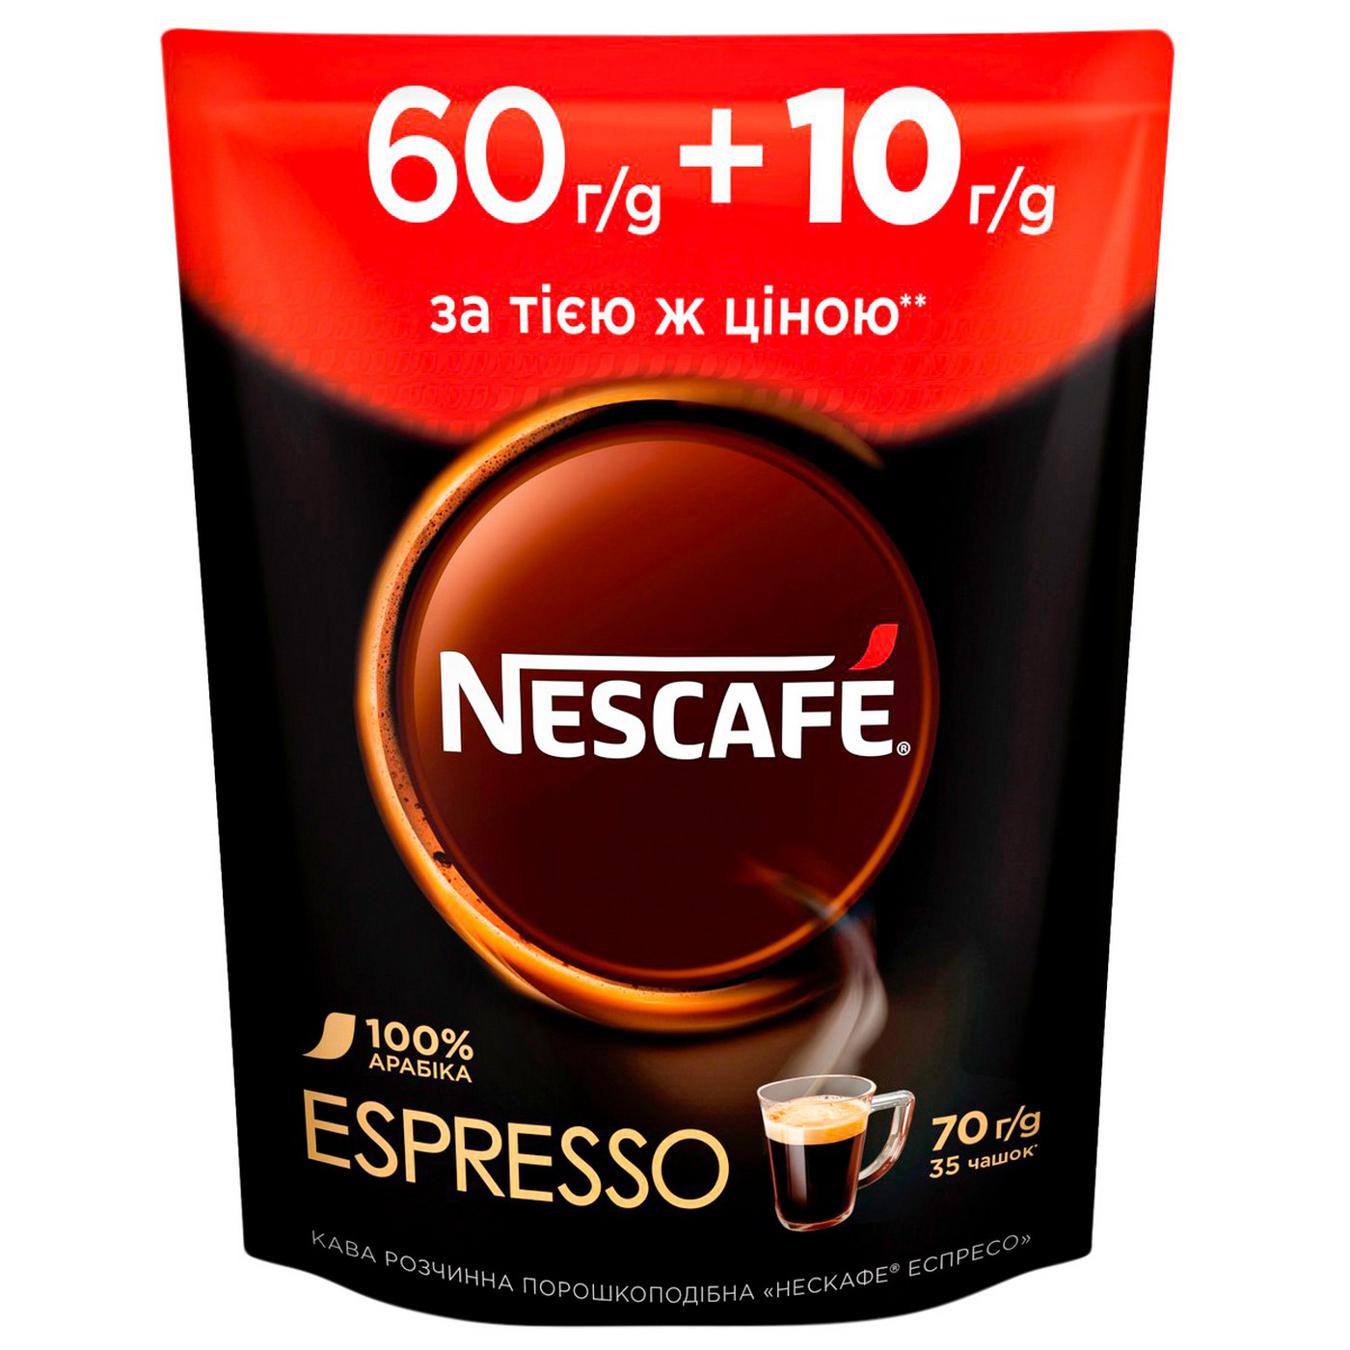 Nestle, Nescafe NESCAFÉ Espresso Iced Coffee Can is halal suitable,  gluten-free